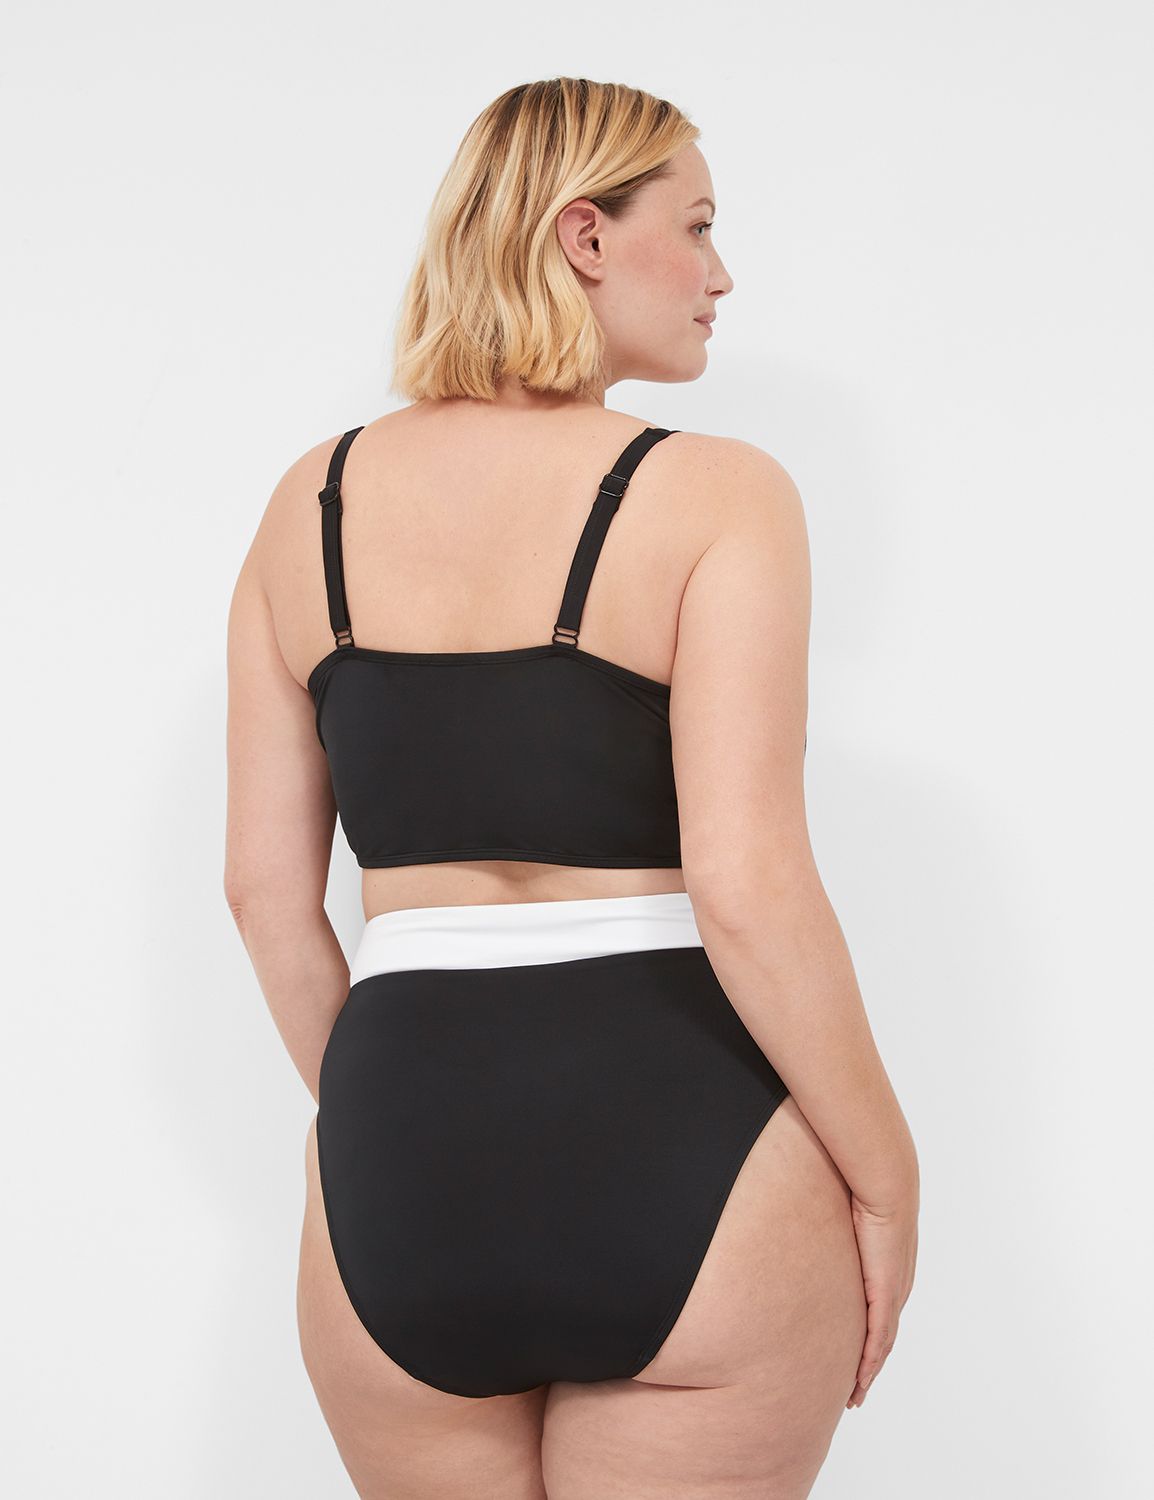 Swimsuits For All Women's Plus Size Bra Sized Tie Front Longline Underwire  Bikini Top 38 F Multi Tie Dye 